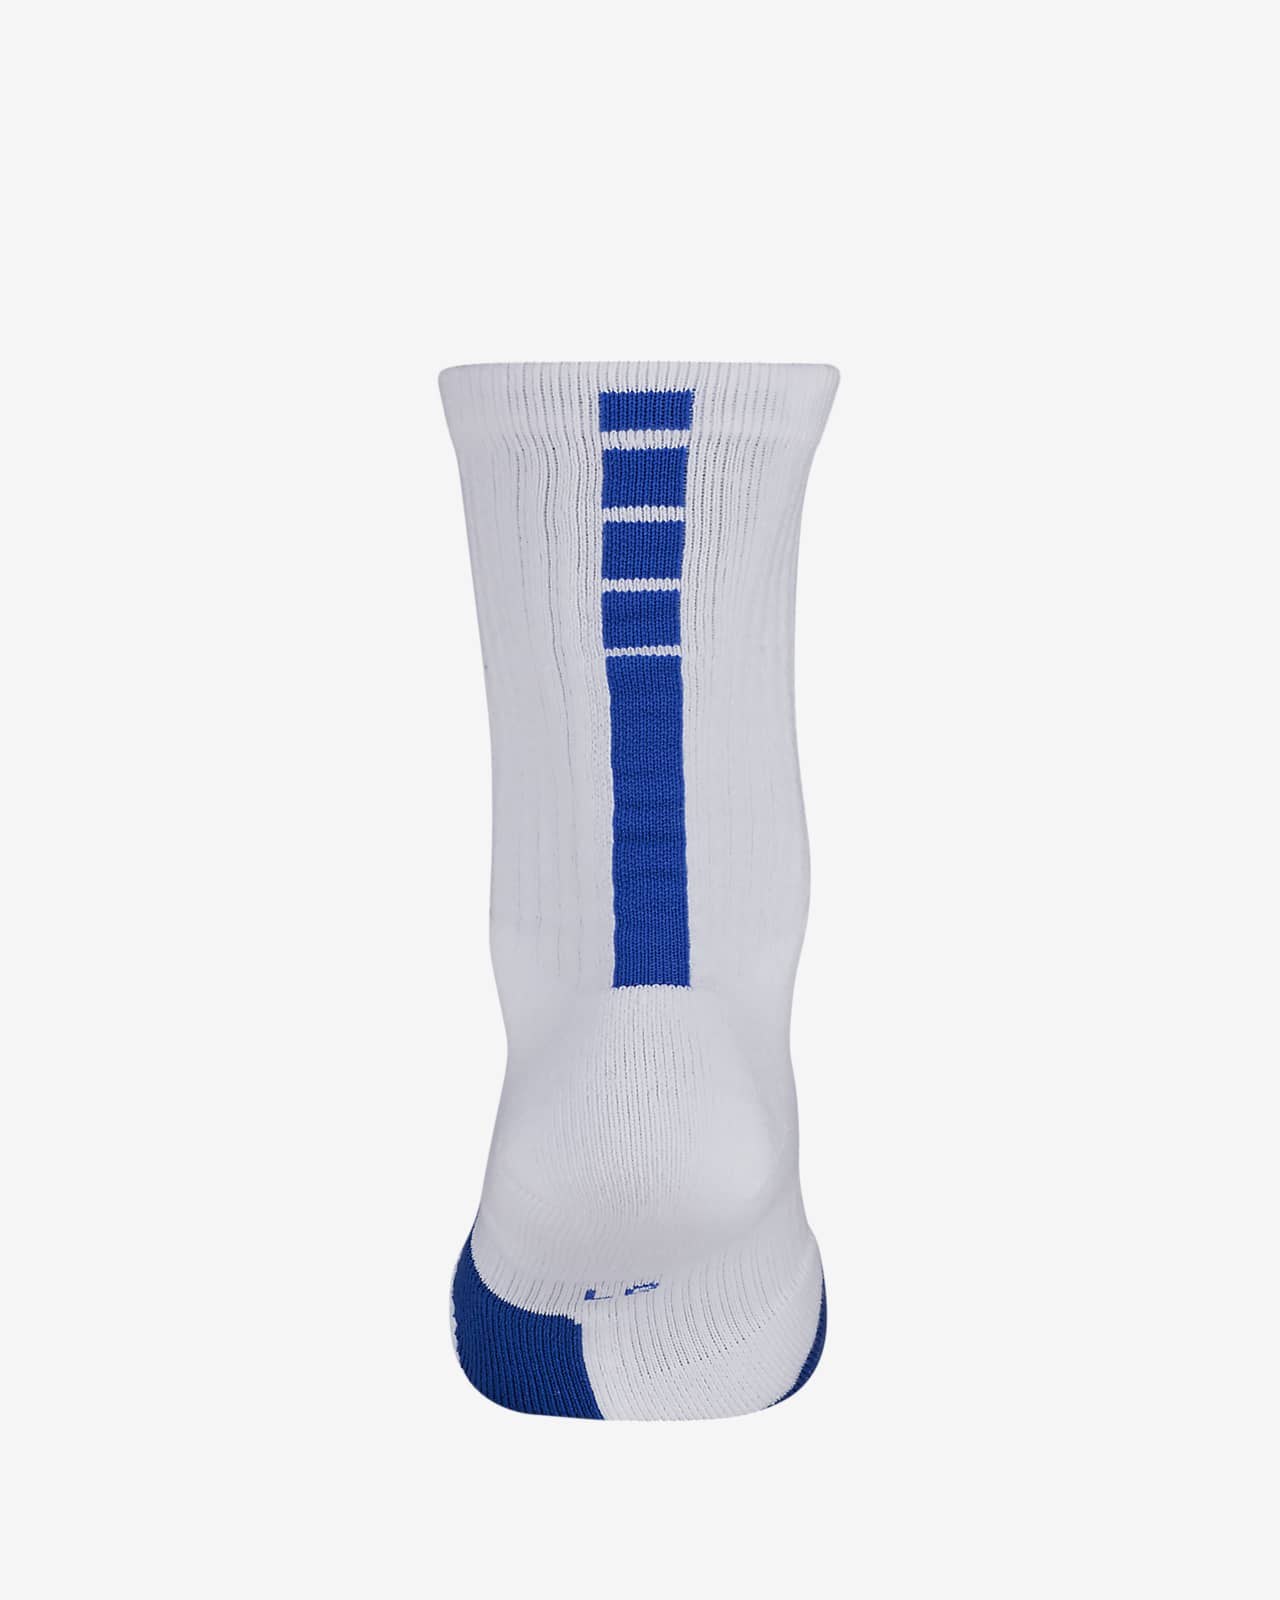 Nike Elite - Calcetines de baloncesto acolchados medianos color azul claro  fotográfico/Volt